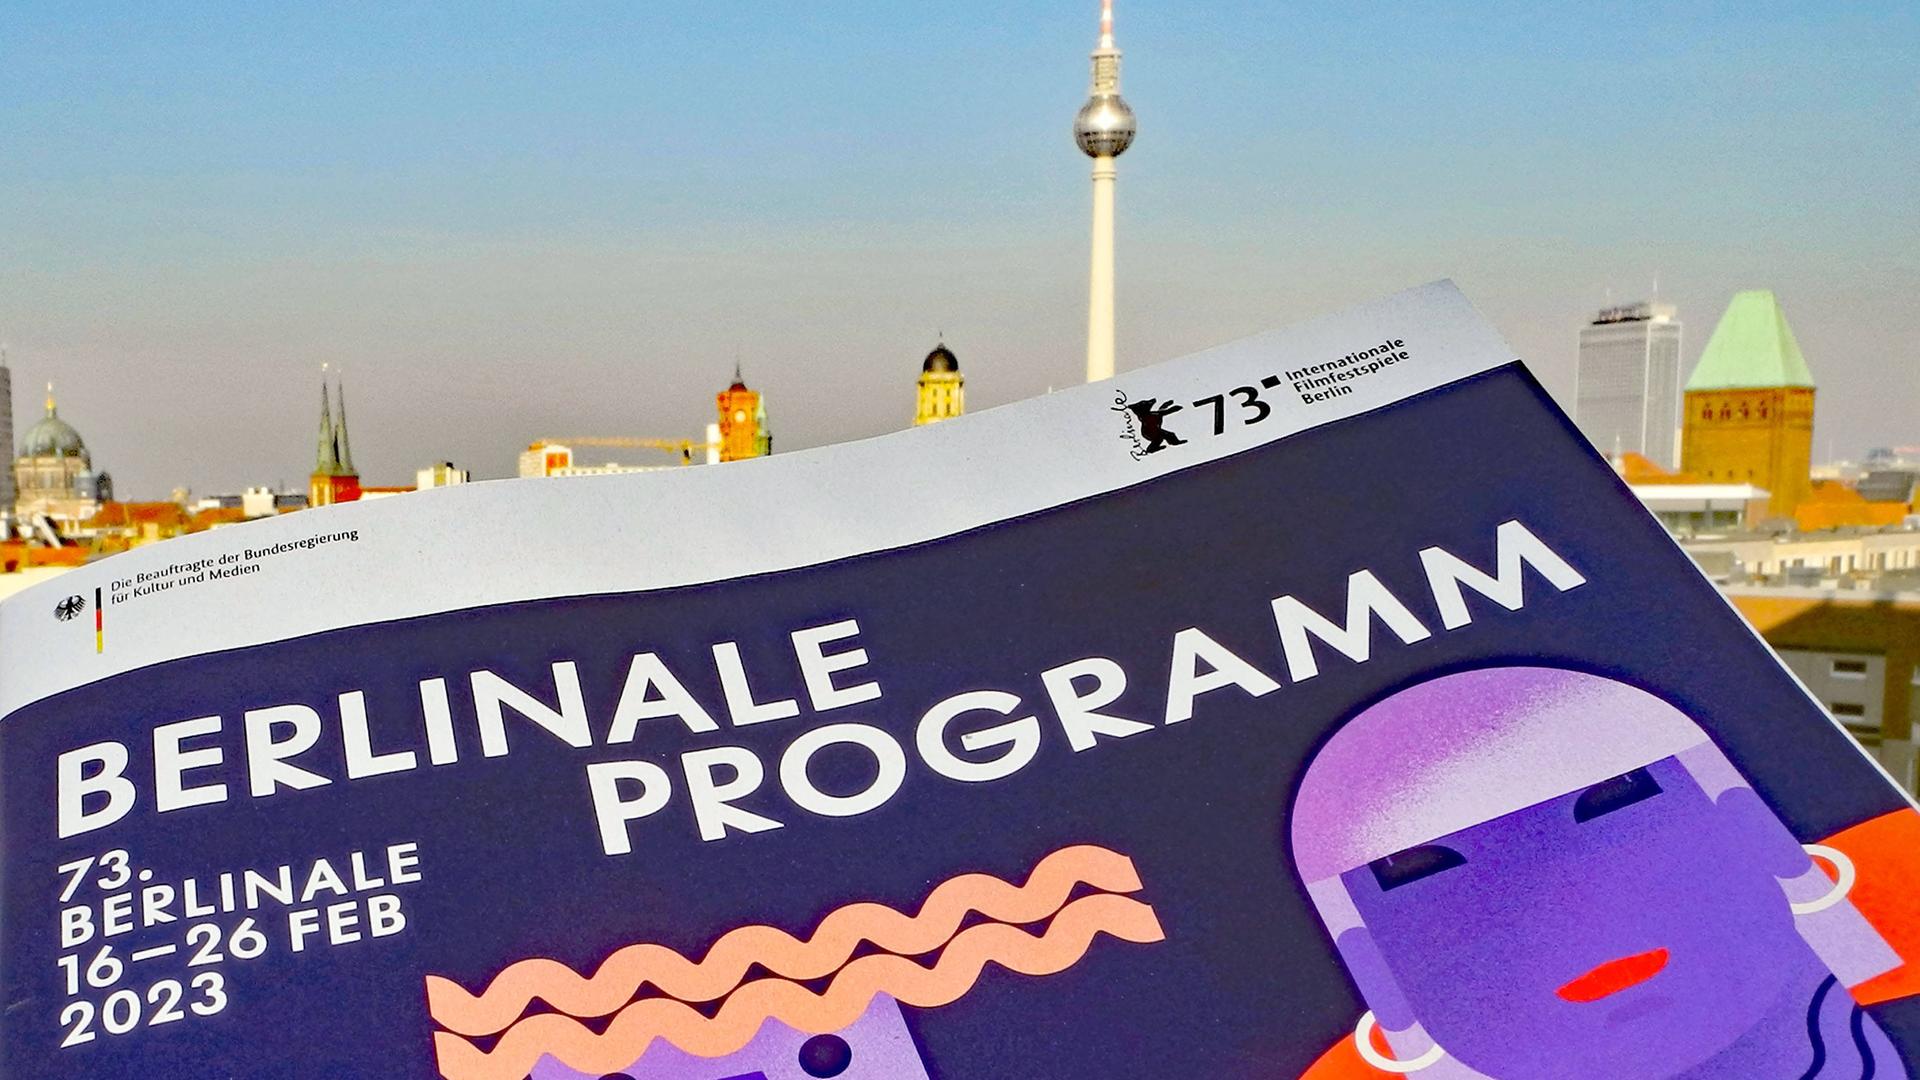 Das offizielle Festivalprogramm der Berlinale 2023 vor der Skylien Berlins mit dem Wahrzeichen Fernsehturm